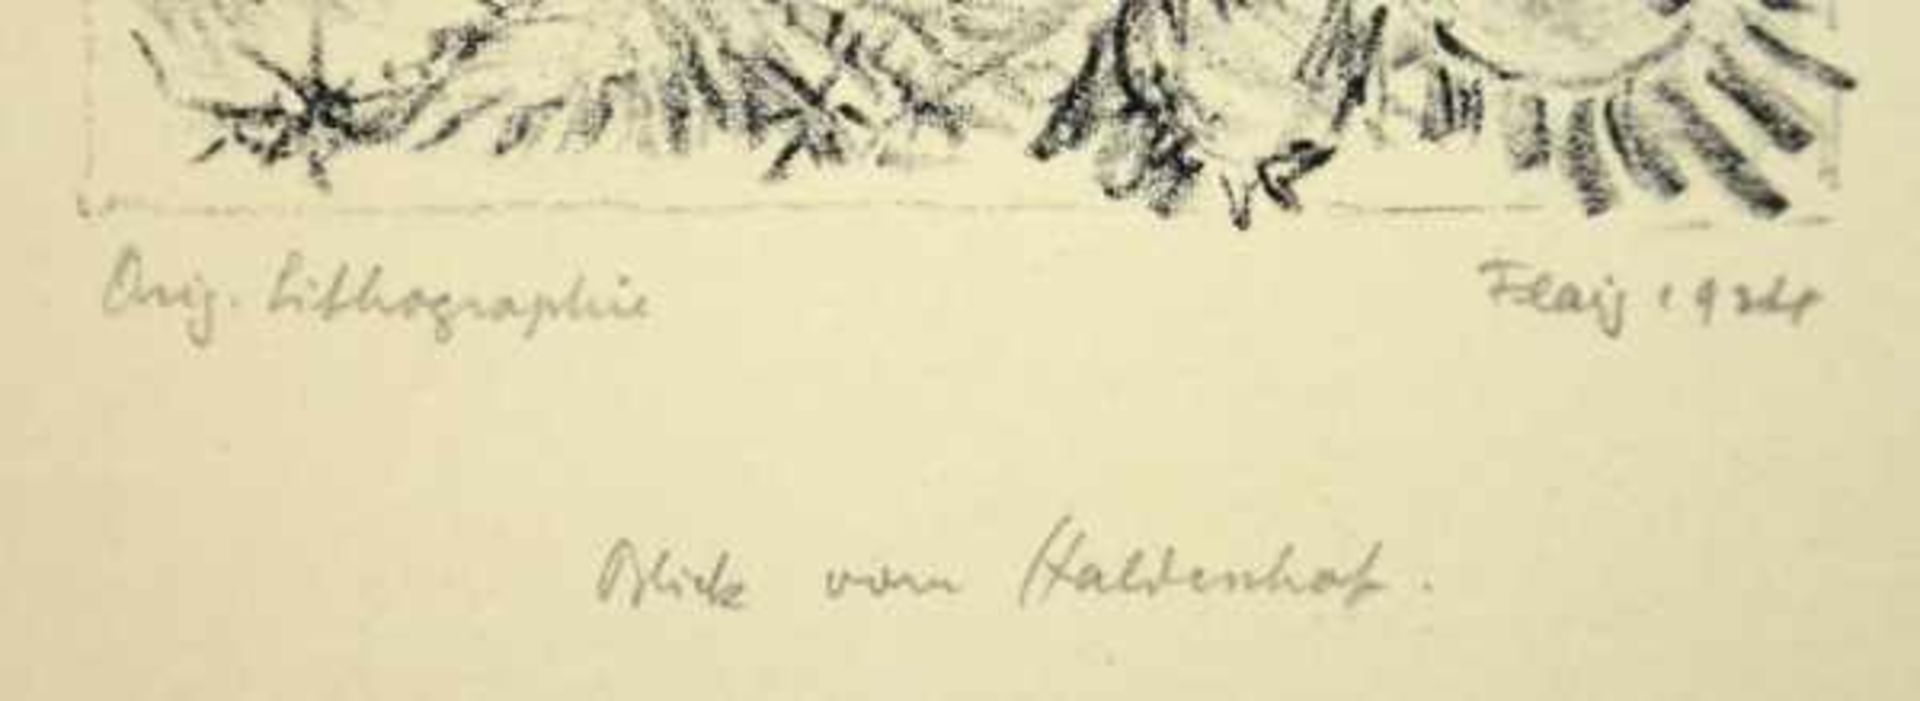 FLAIG Waldemar (1892-1932 Villingen) "Möwen", ein Schwarm Möwen fliegt im Sonnenuntergang an der - Bild 2 aus 4